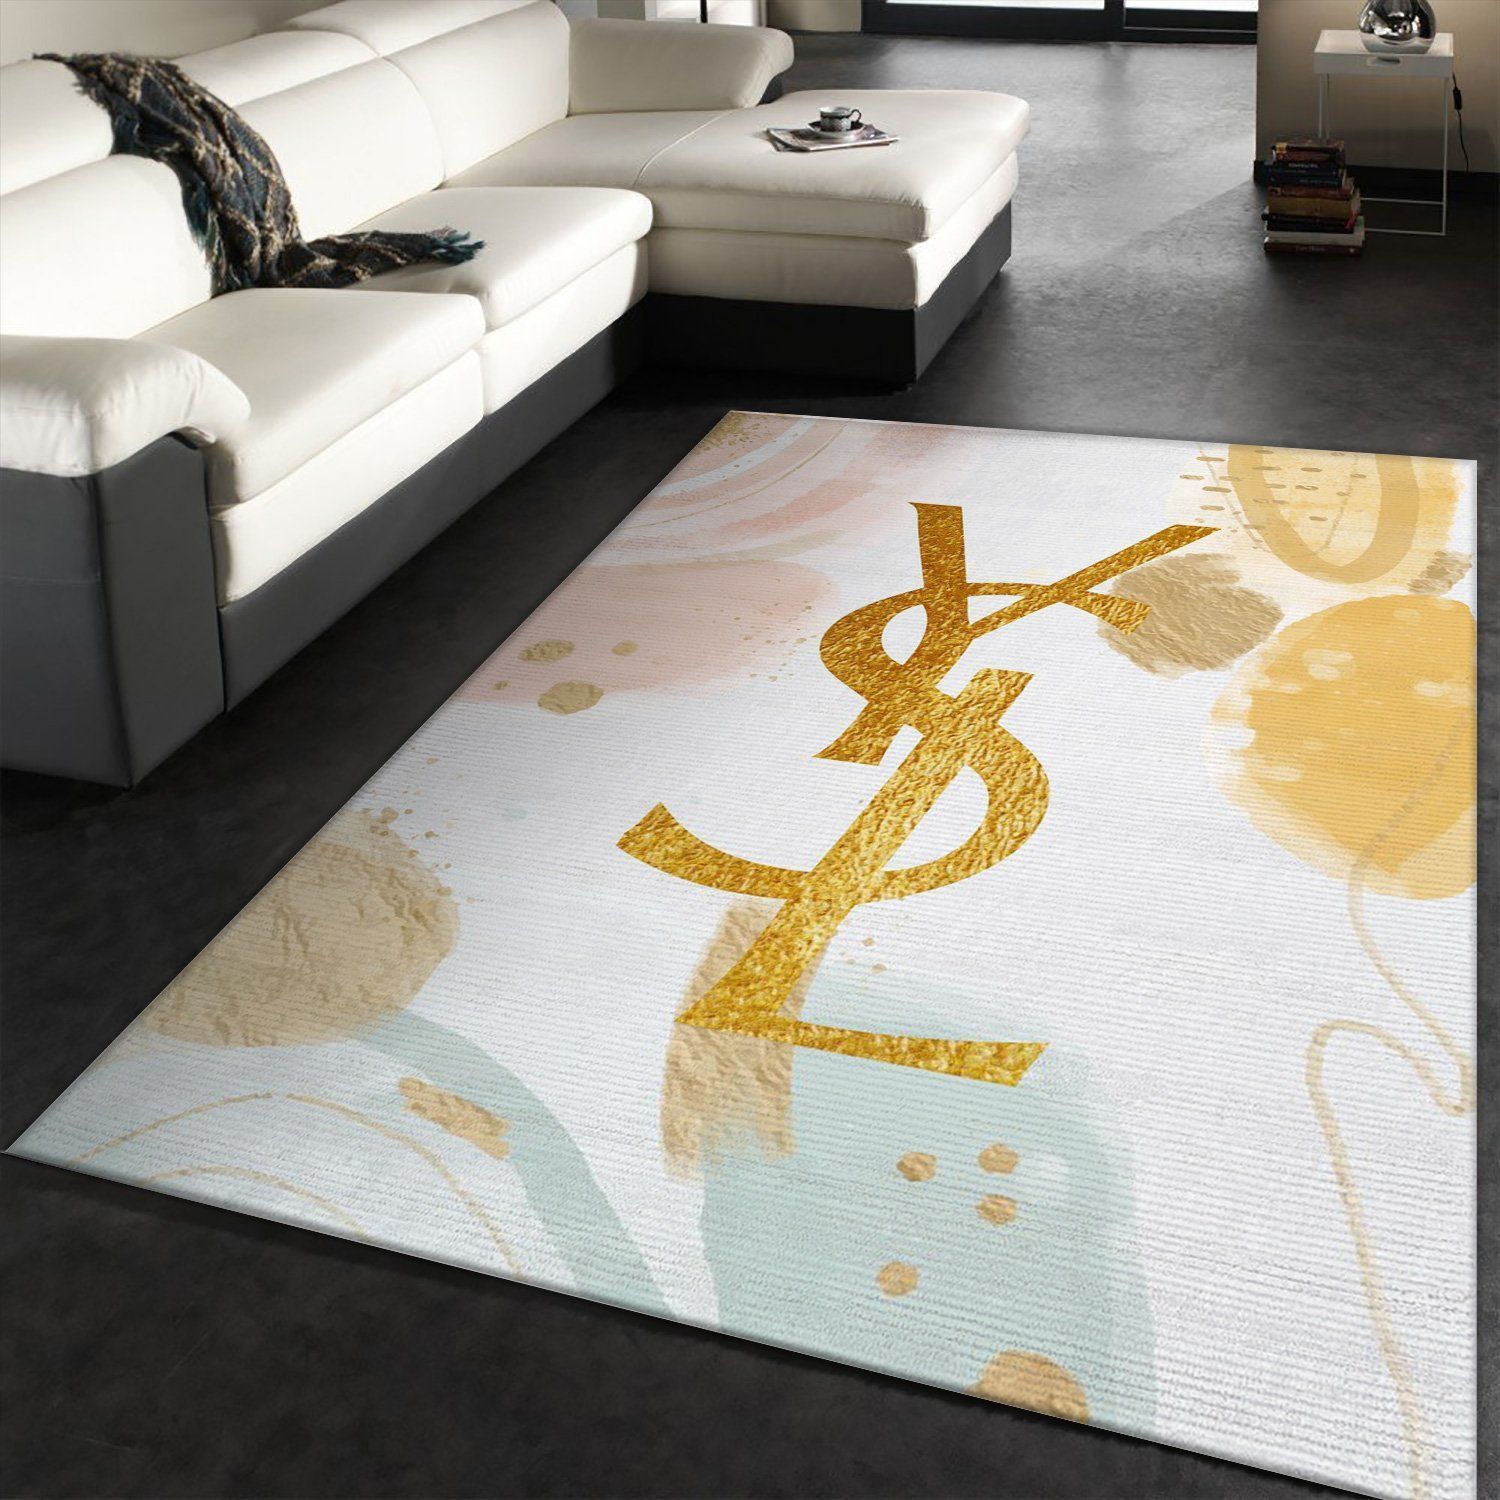 Ysl Yves Saint Lauren Rectangle Rug Bedroom Rug Home Decor Floor Decor - Indoor Outdoor Rugs